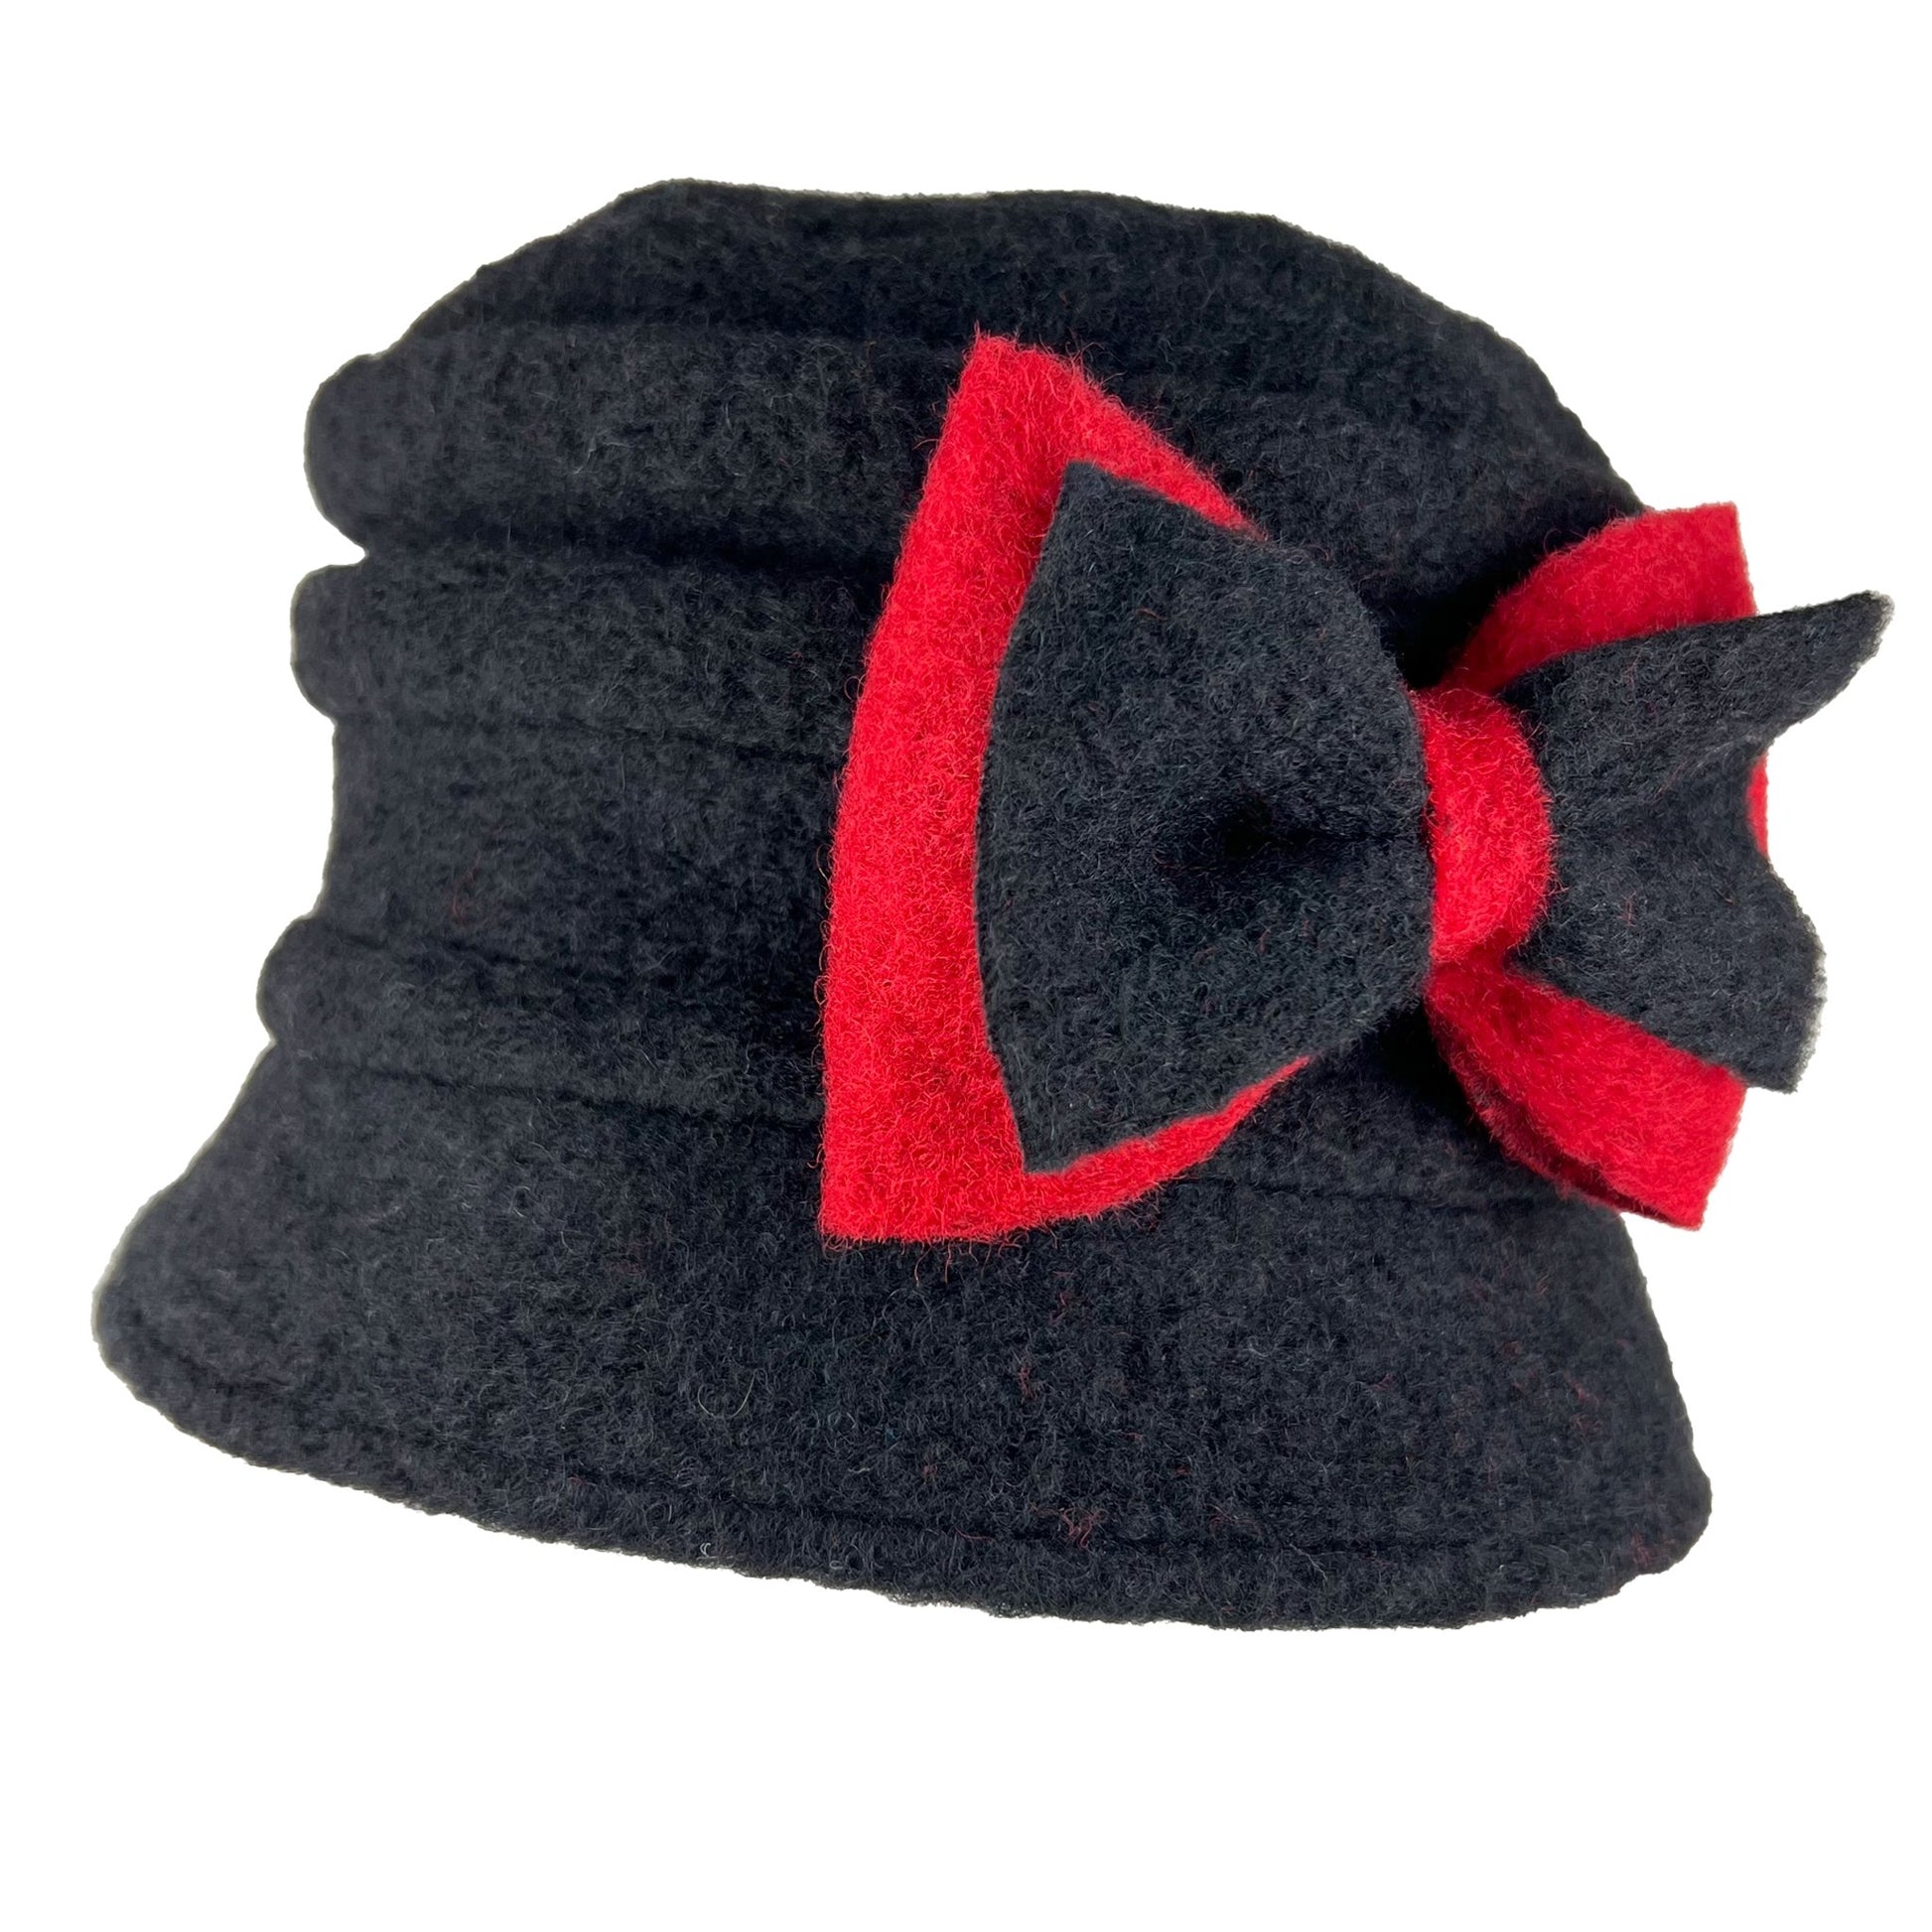 Elisabet - wool hat - black/red - nammi.isÓfeigur